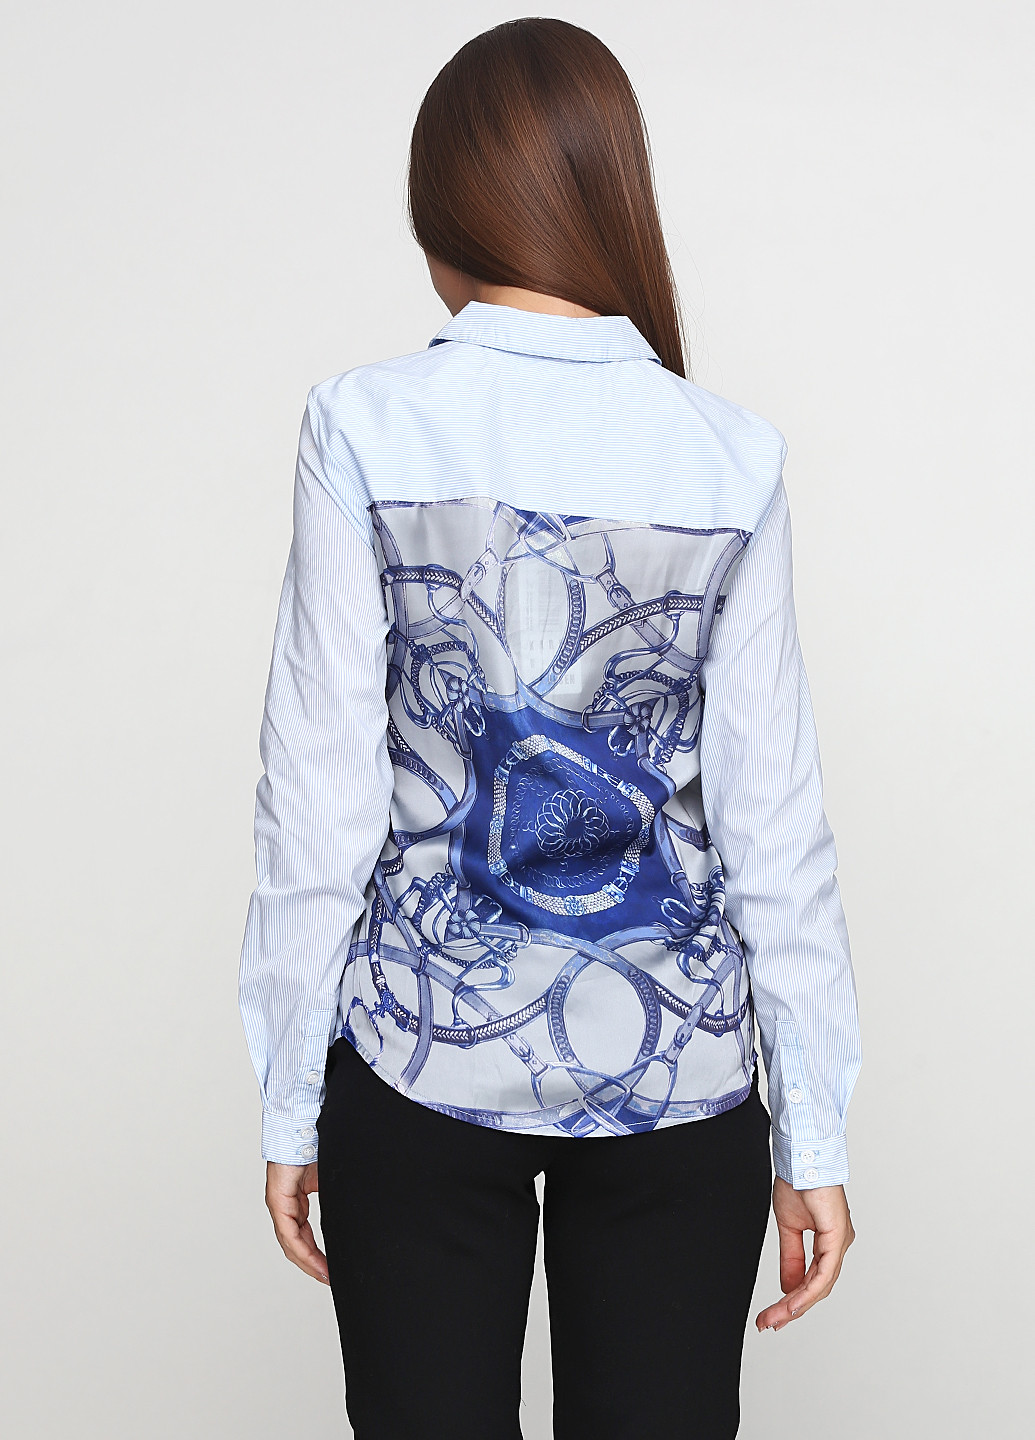 Комбинированная демисезонная блуза Karen by Simonsen